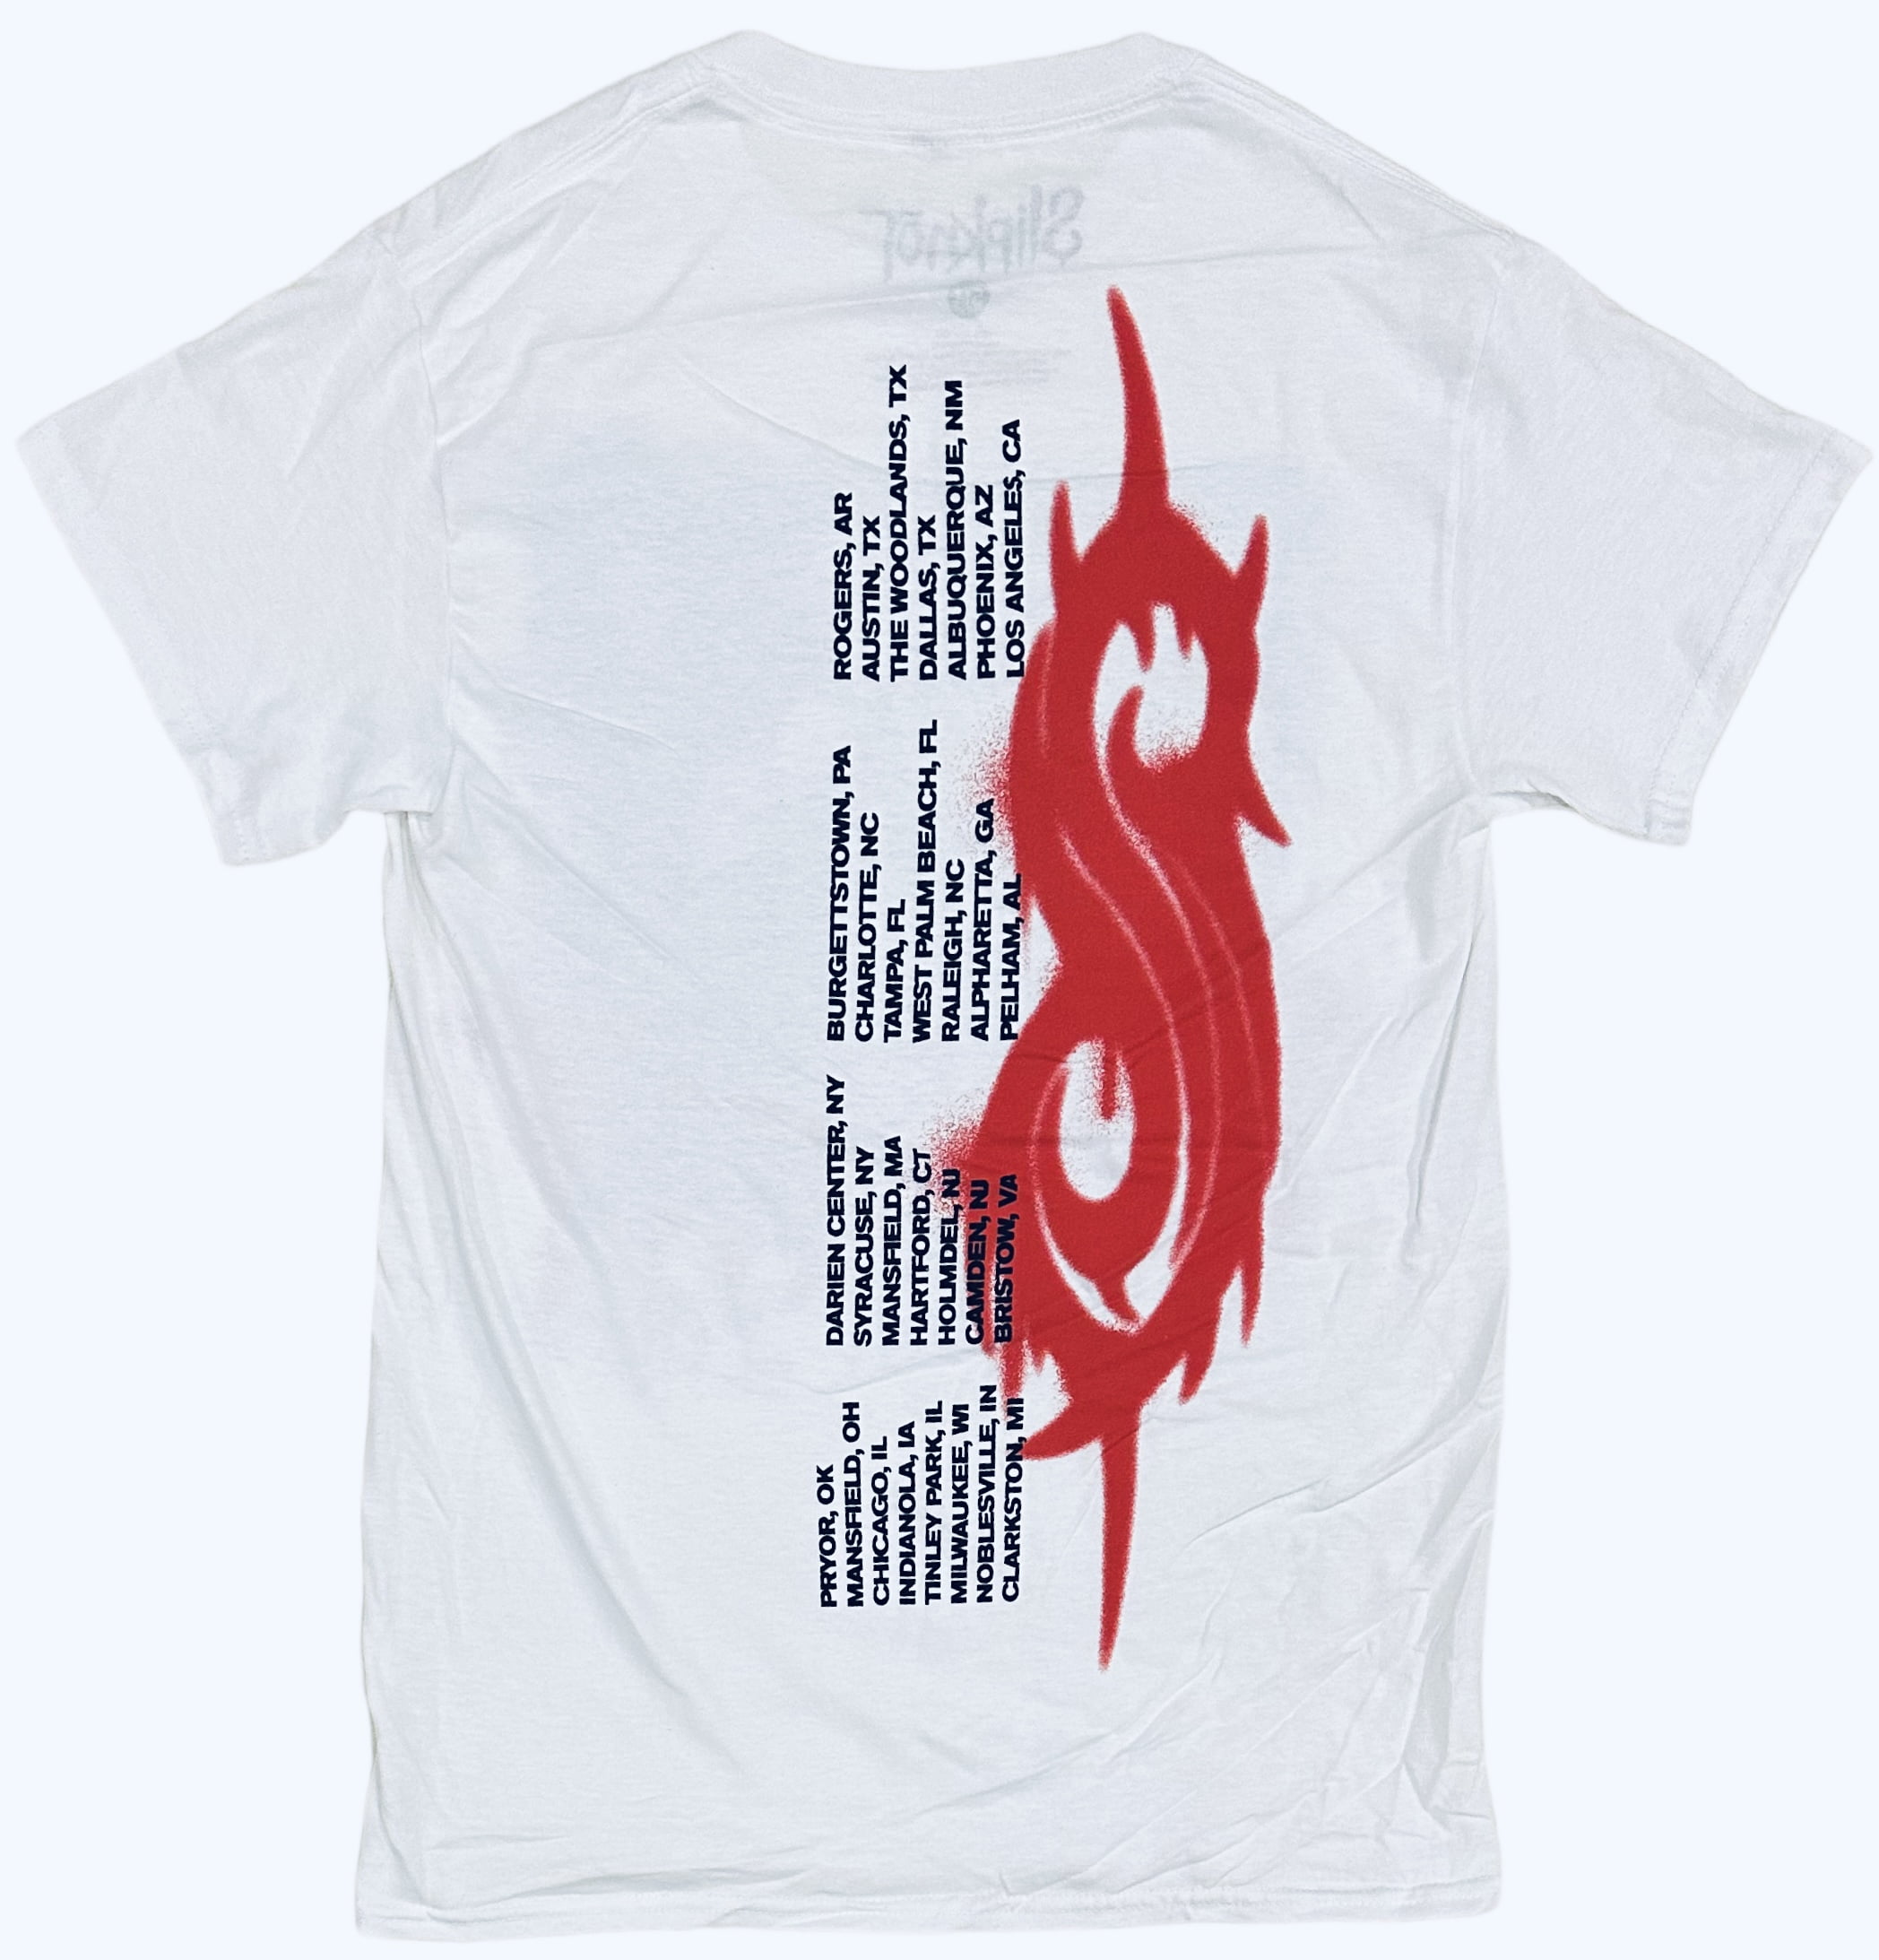 Slipknot Men\'s Officially Licensed Rare Concert Tour 2021 Knotfest Tee T- Shirt (XXX-Large, White)